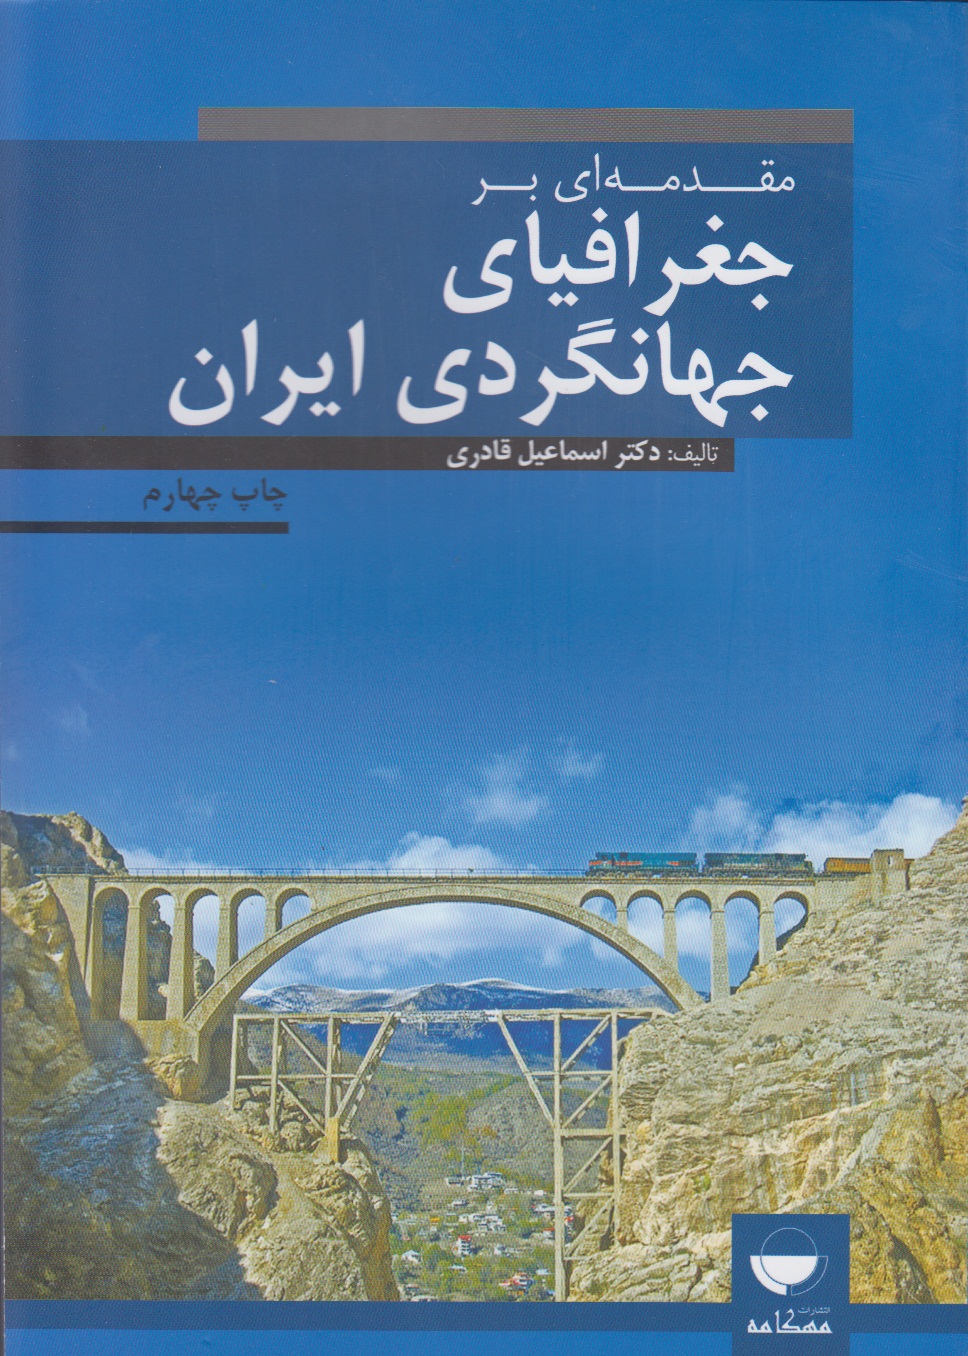 مقدمه ای بر جغرافیای جهانگردی ایران